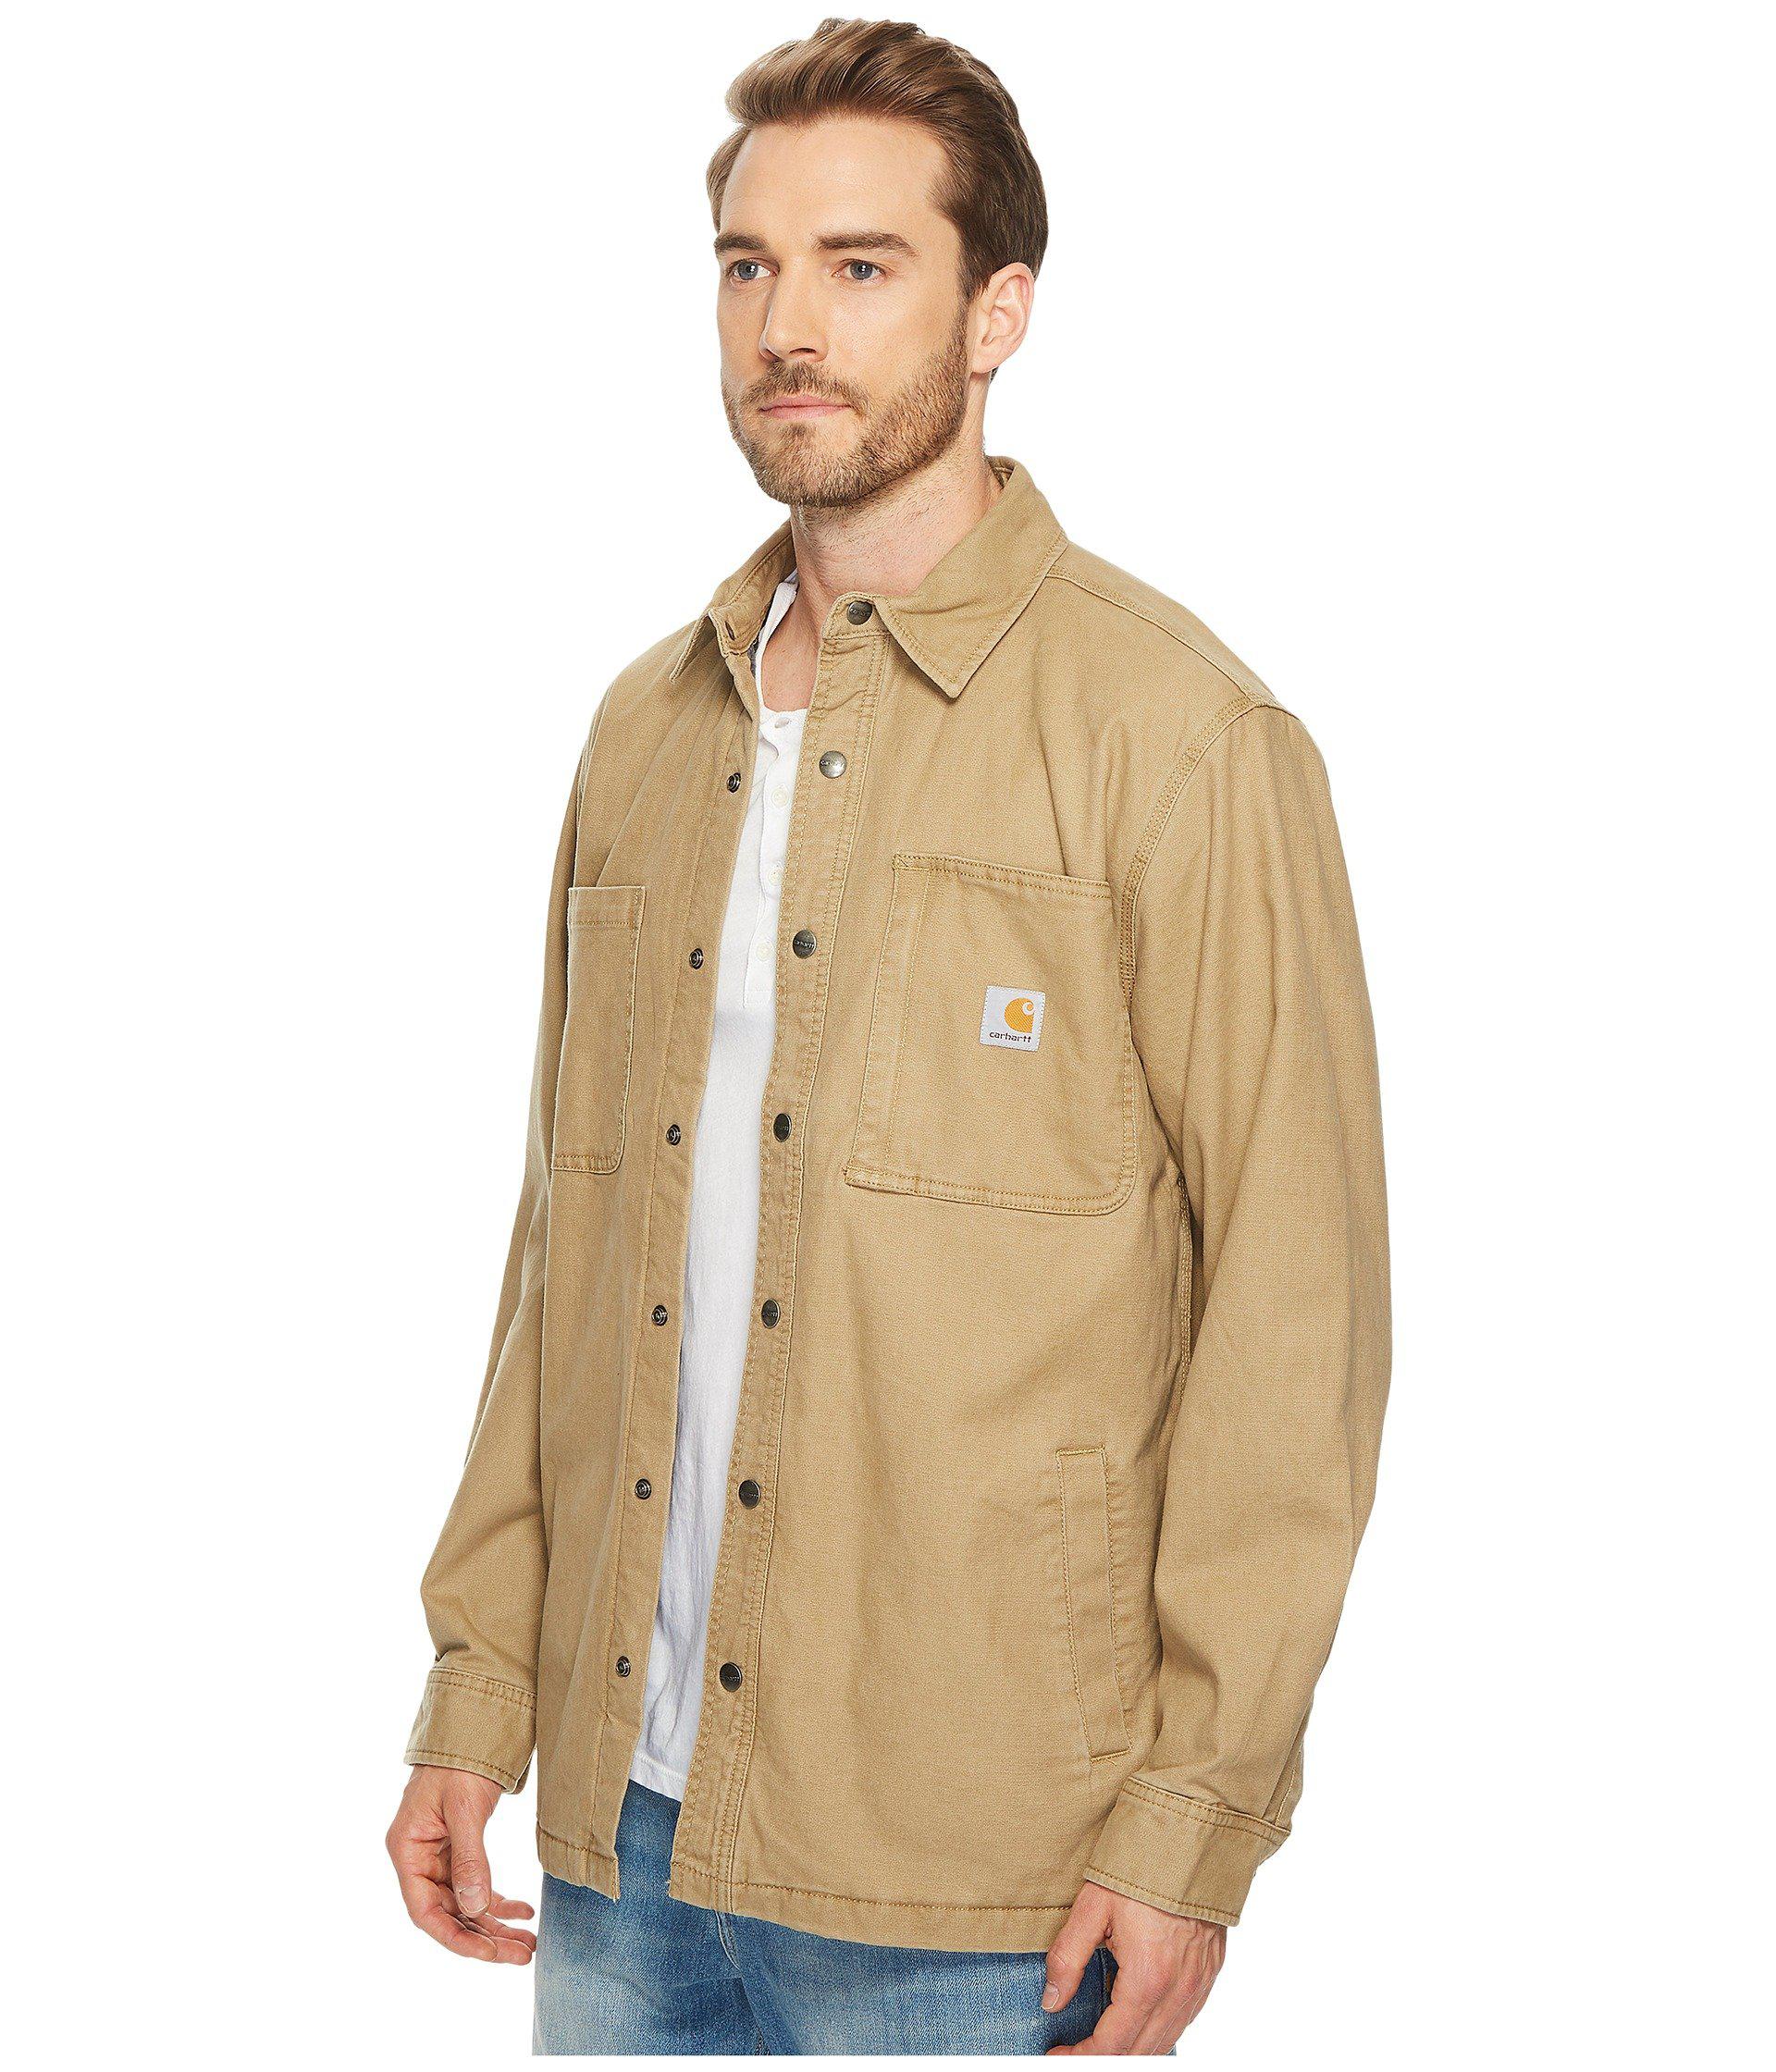 Buy carhartt men's rugged flex rigby fleece lined shirt jac cheap online